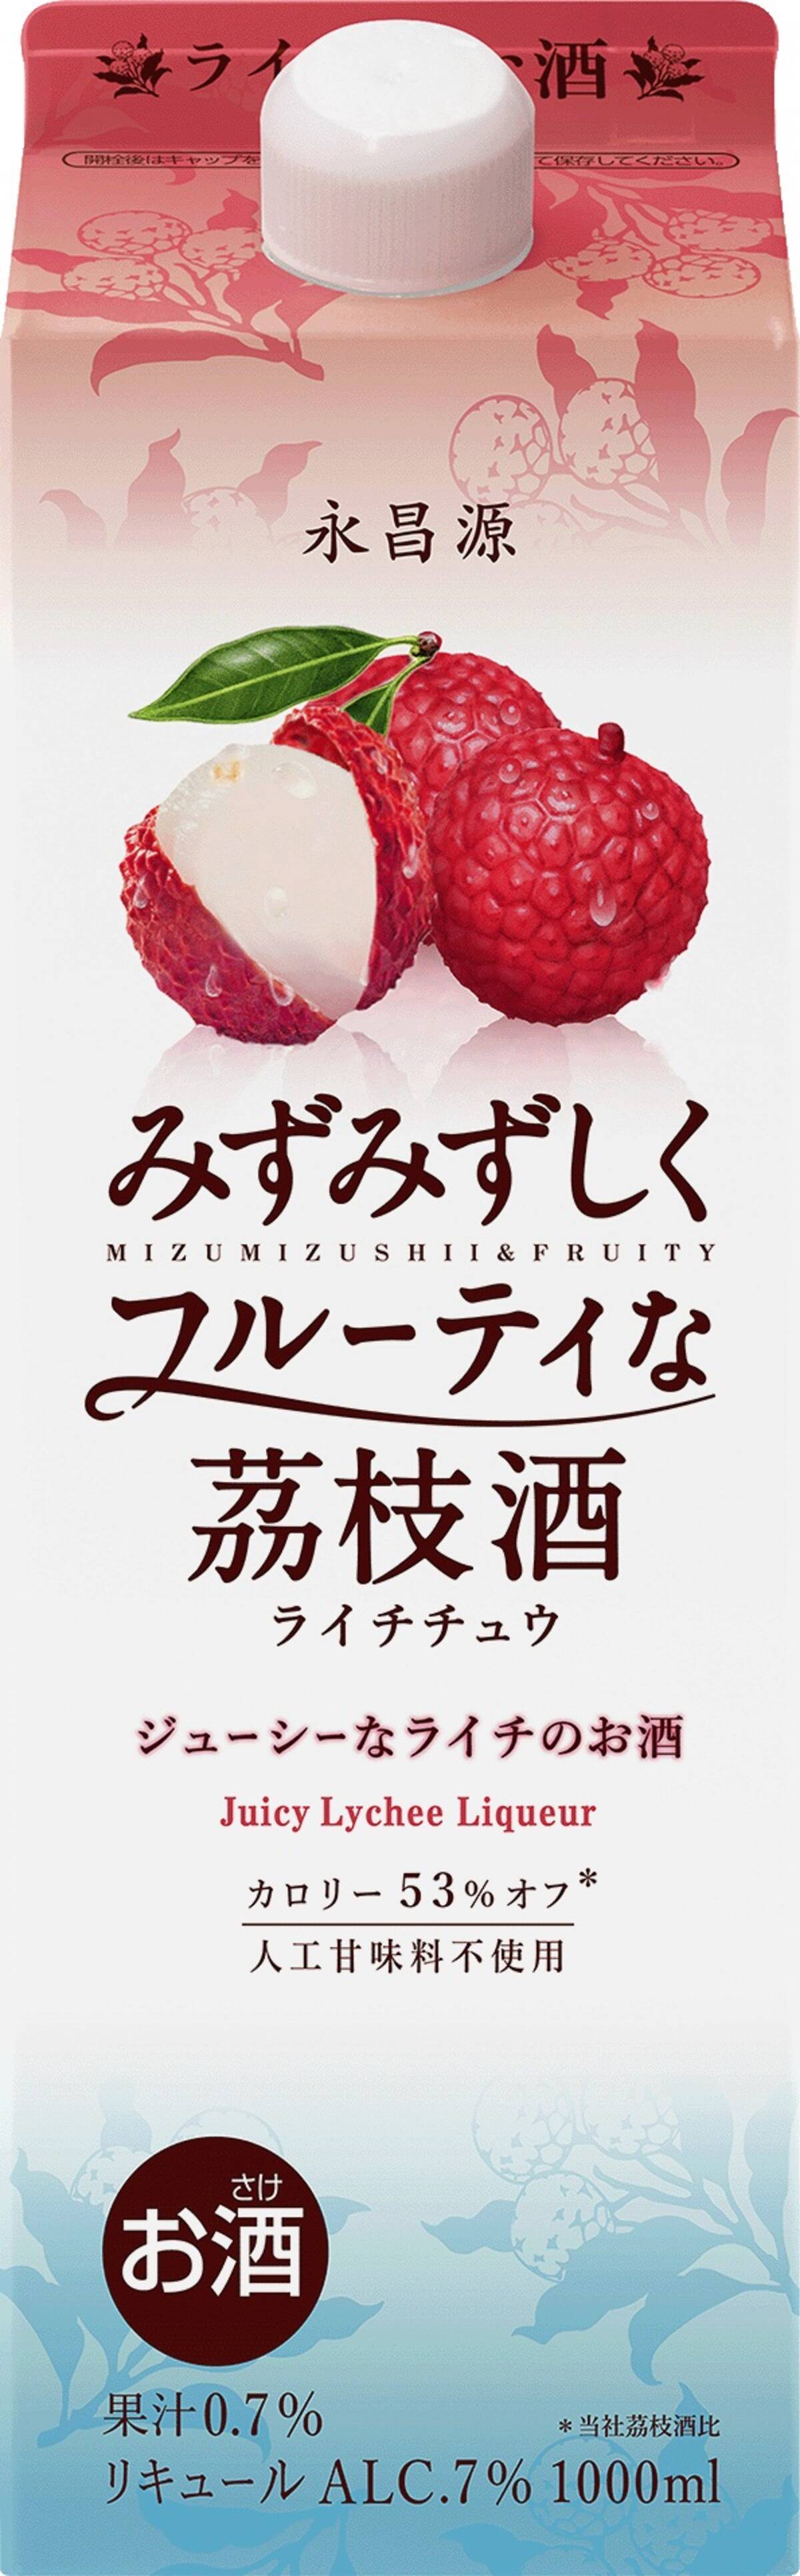 みずみずしくフルーティな茘枝酒 ライチチュウ を新発売 15年8月10日 エキサイトニュース